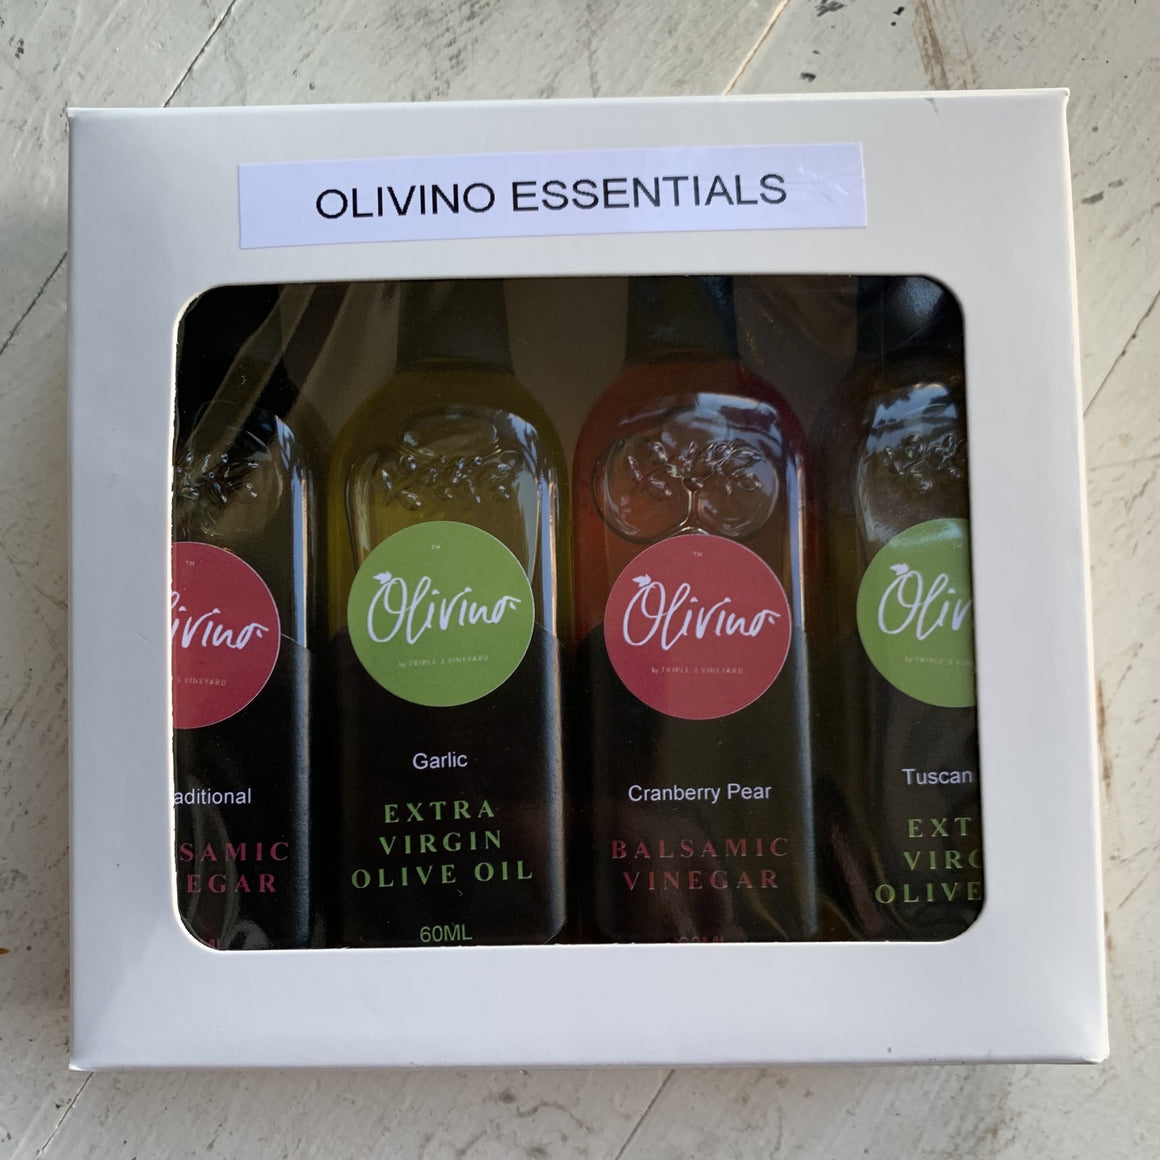 Olivino Essentials